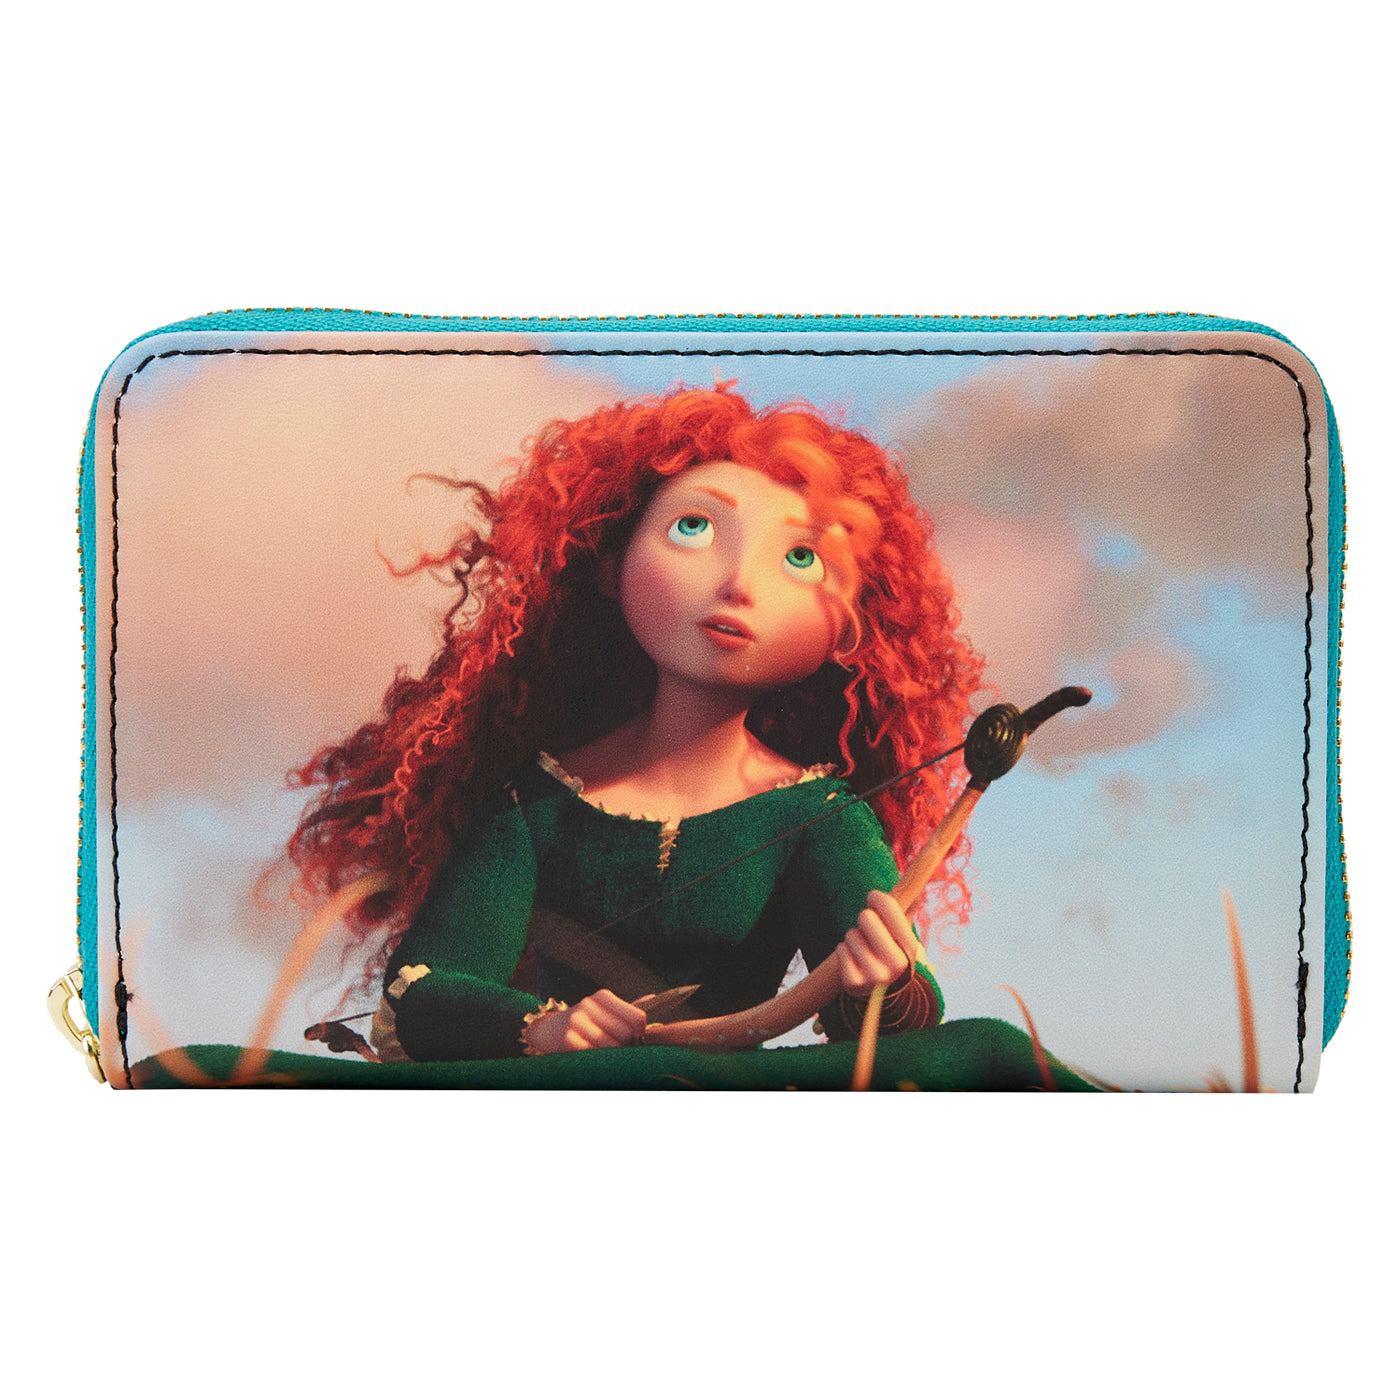 Disney Pixar Brave Merida Princess Scene Wallet